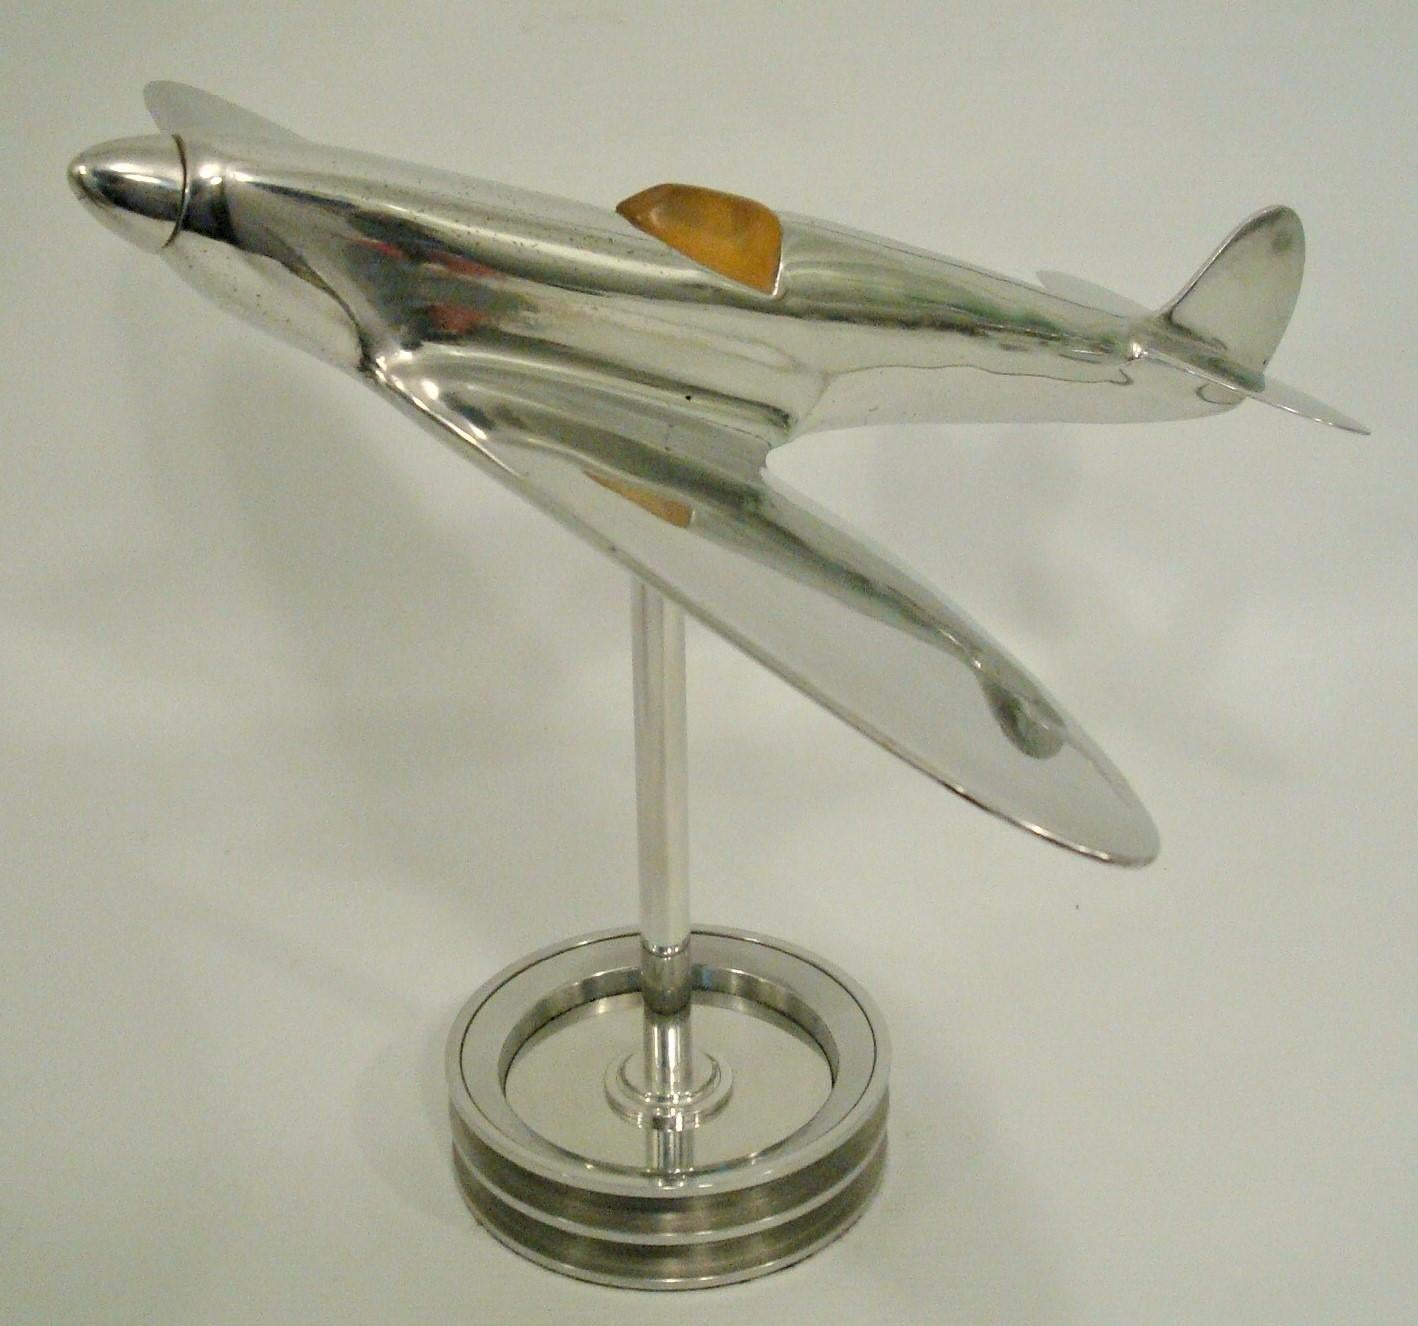 Maquette d'avion Supermarine Spitfire, bureau / pions / sculpture.
Fabriqué au Royaume-Uni dans les années 1930. Cadeau parfait pour tout pilote ou fan d'aviation.

Le Supermarine Spitfire est un avion de combat monoplace britannique utilisé par